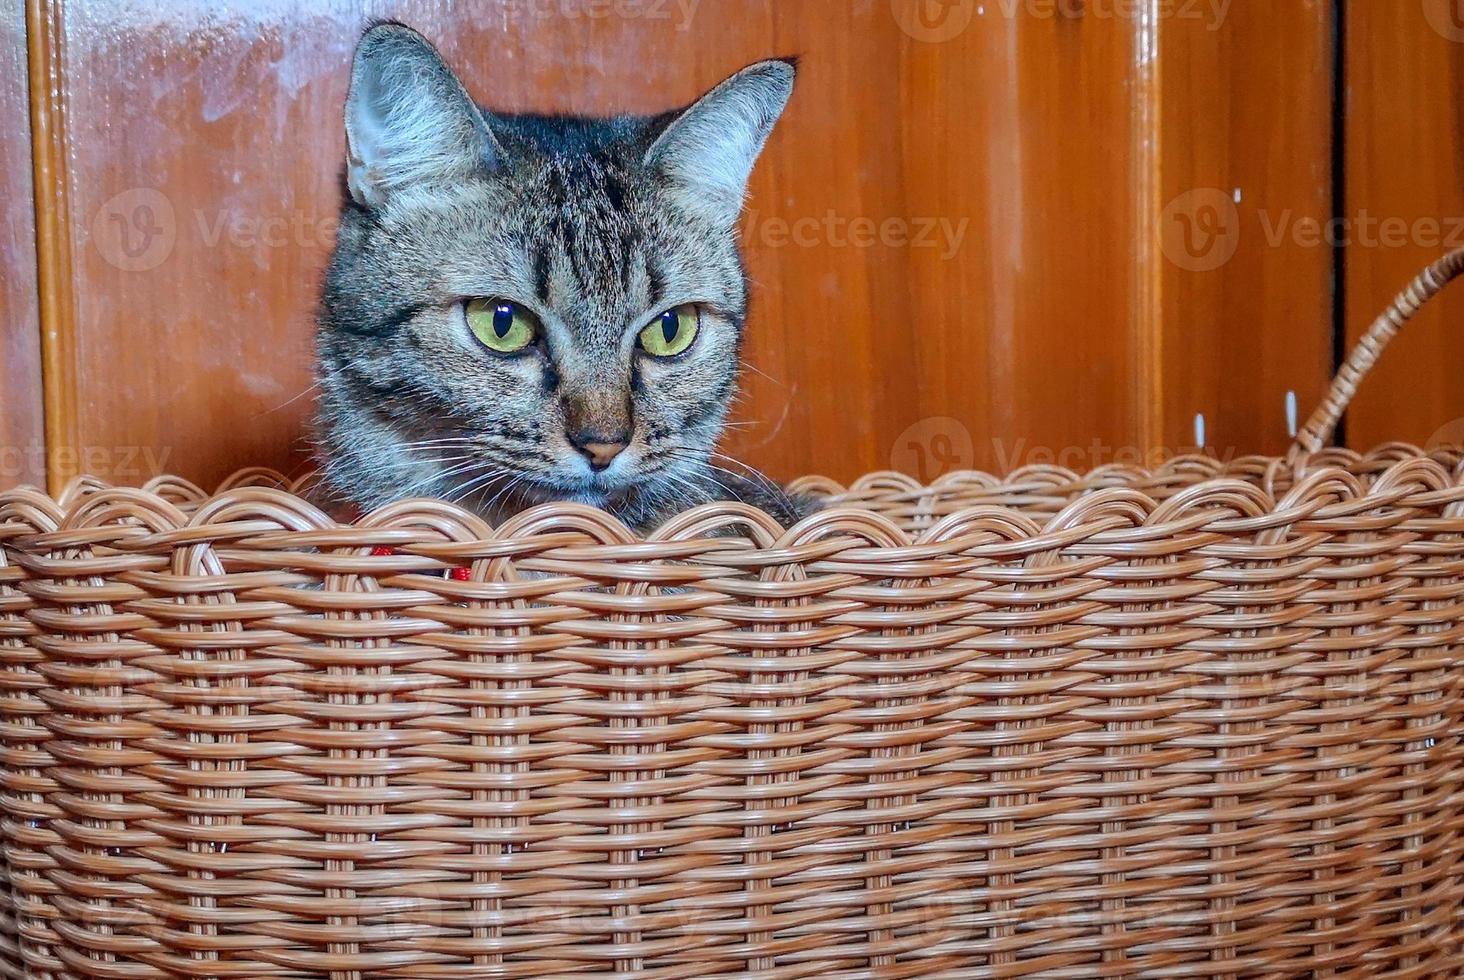 en katt som sitter i korgen. foto